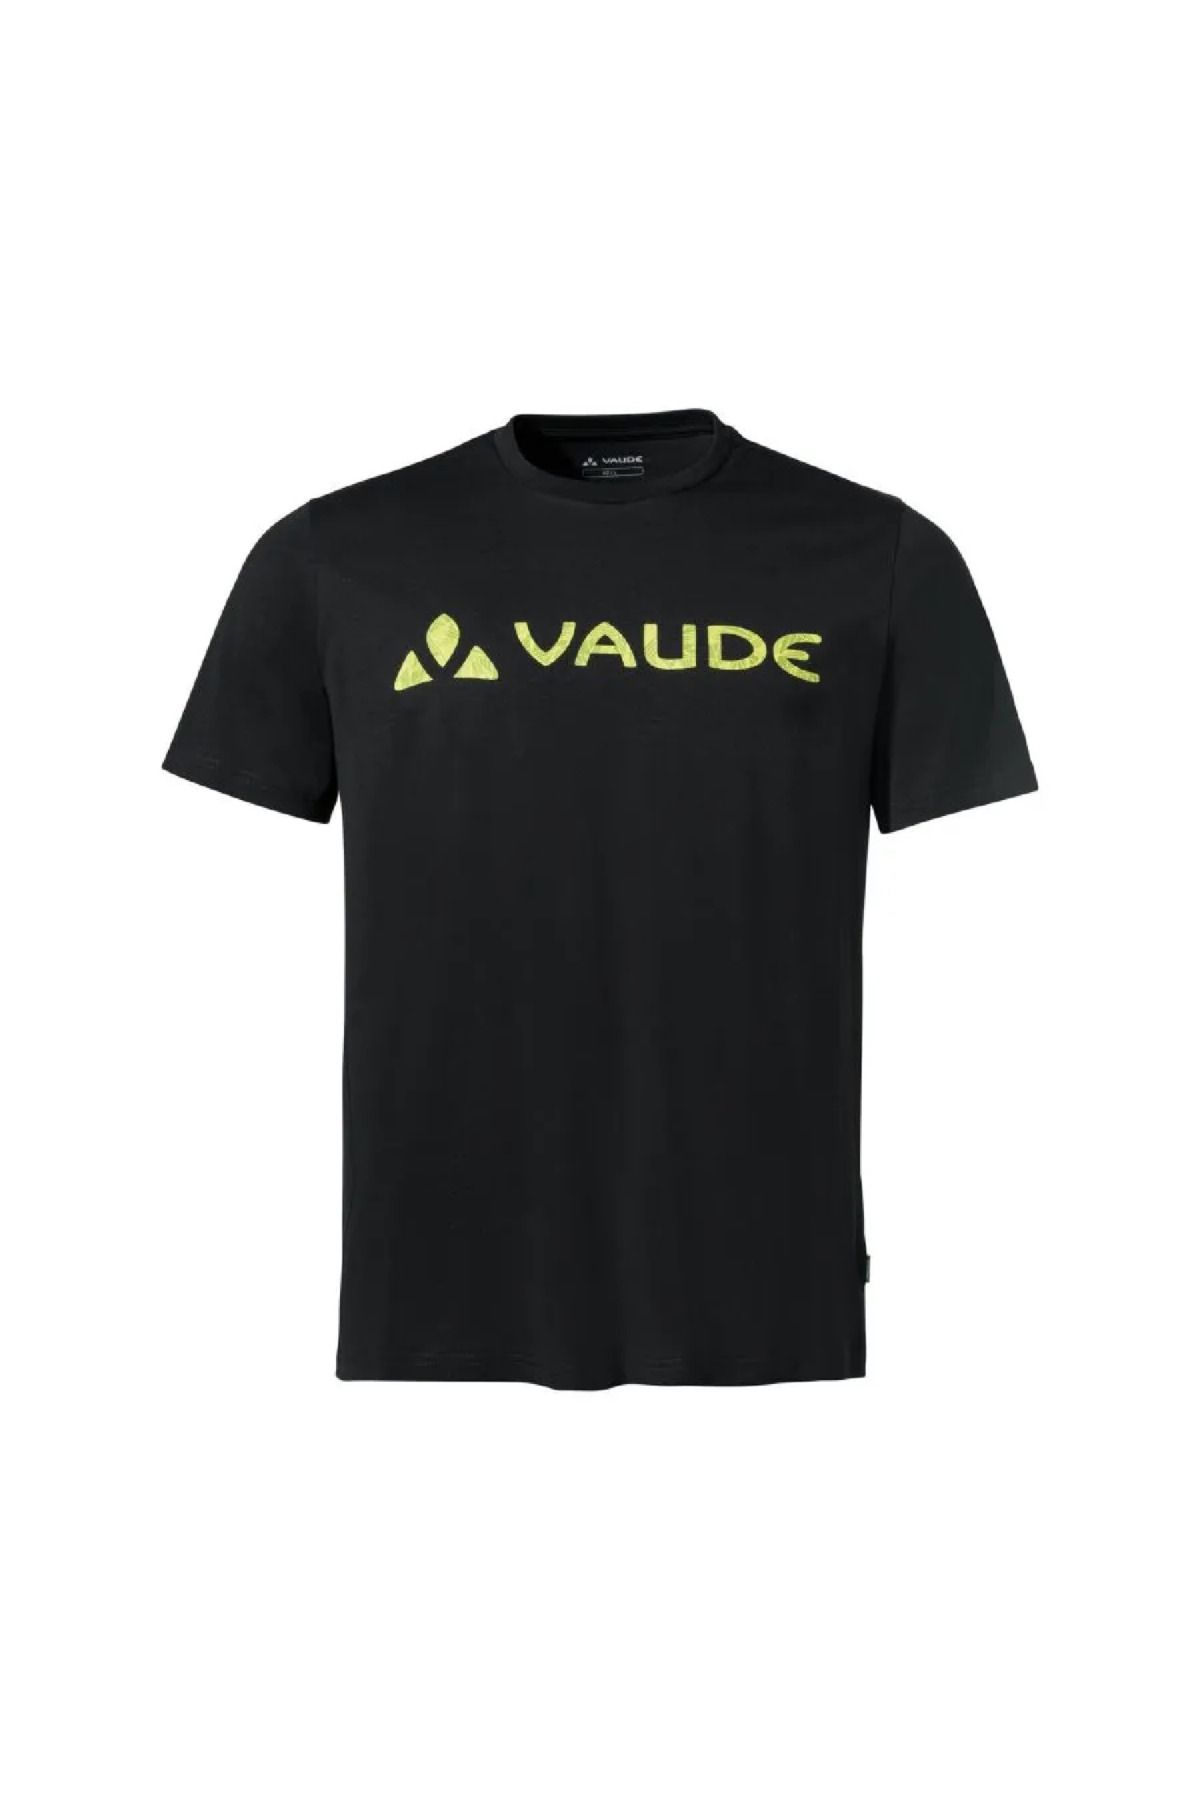 Vaude Logolu Erkek T-Shirt 42388-021